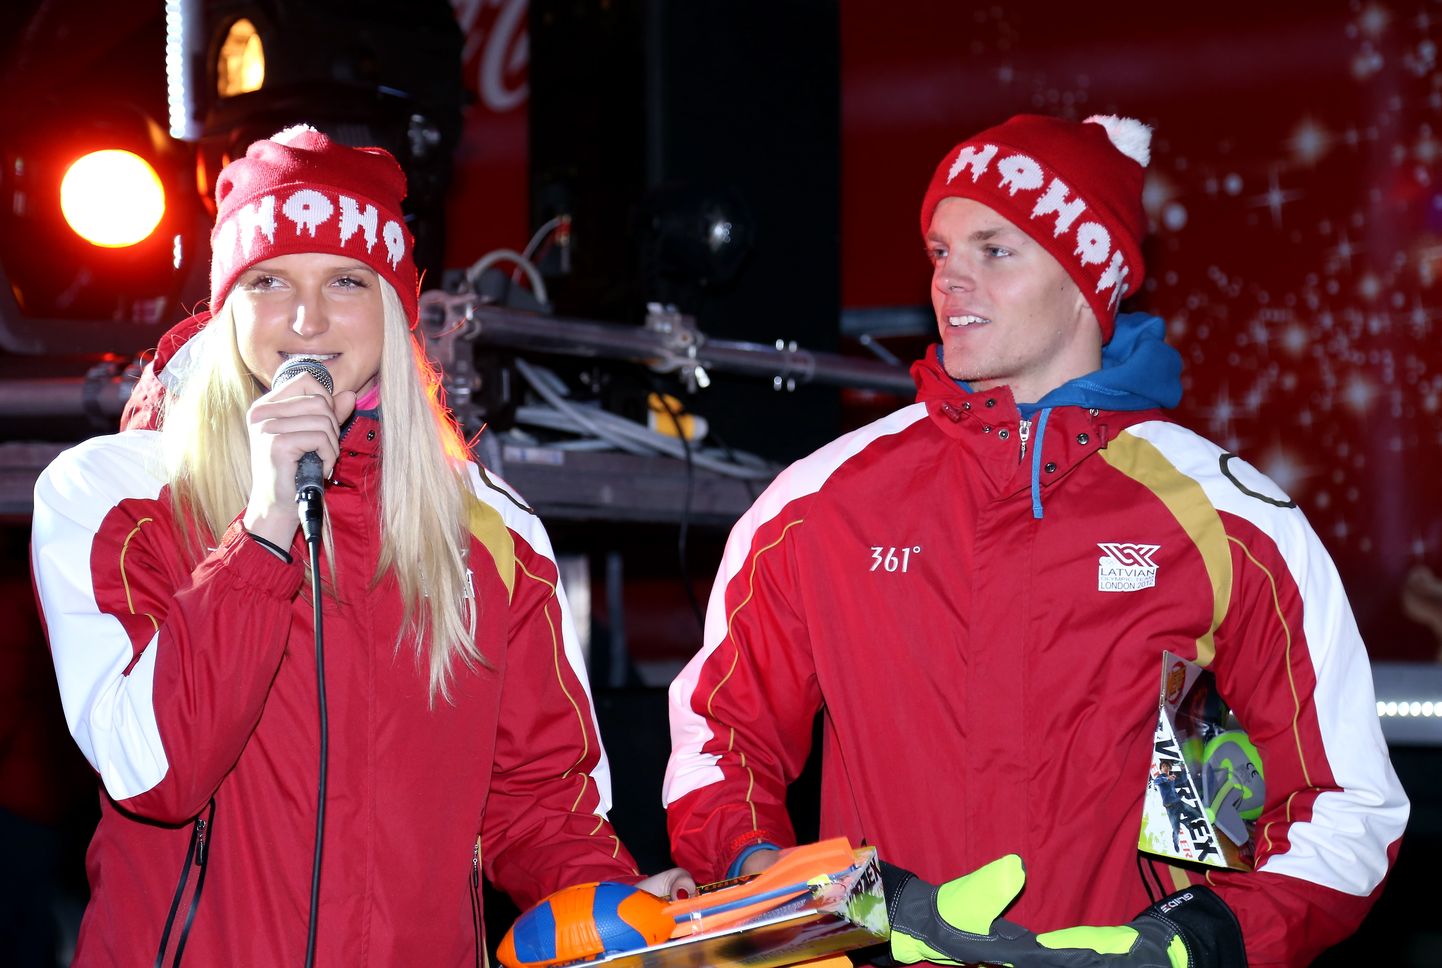 Latvijas Olimpiskās komandas pārstāvji, šķepmetēji Līna Mūze un Zigismunds Sirmais piedalās labdarības projekta "Ziemassvētku karavānas" atklāšanas pasākumā pie Brīvības pieminekļa.